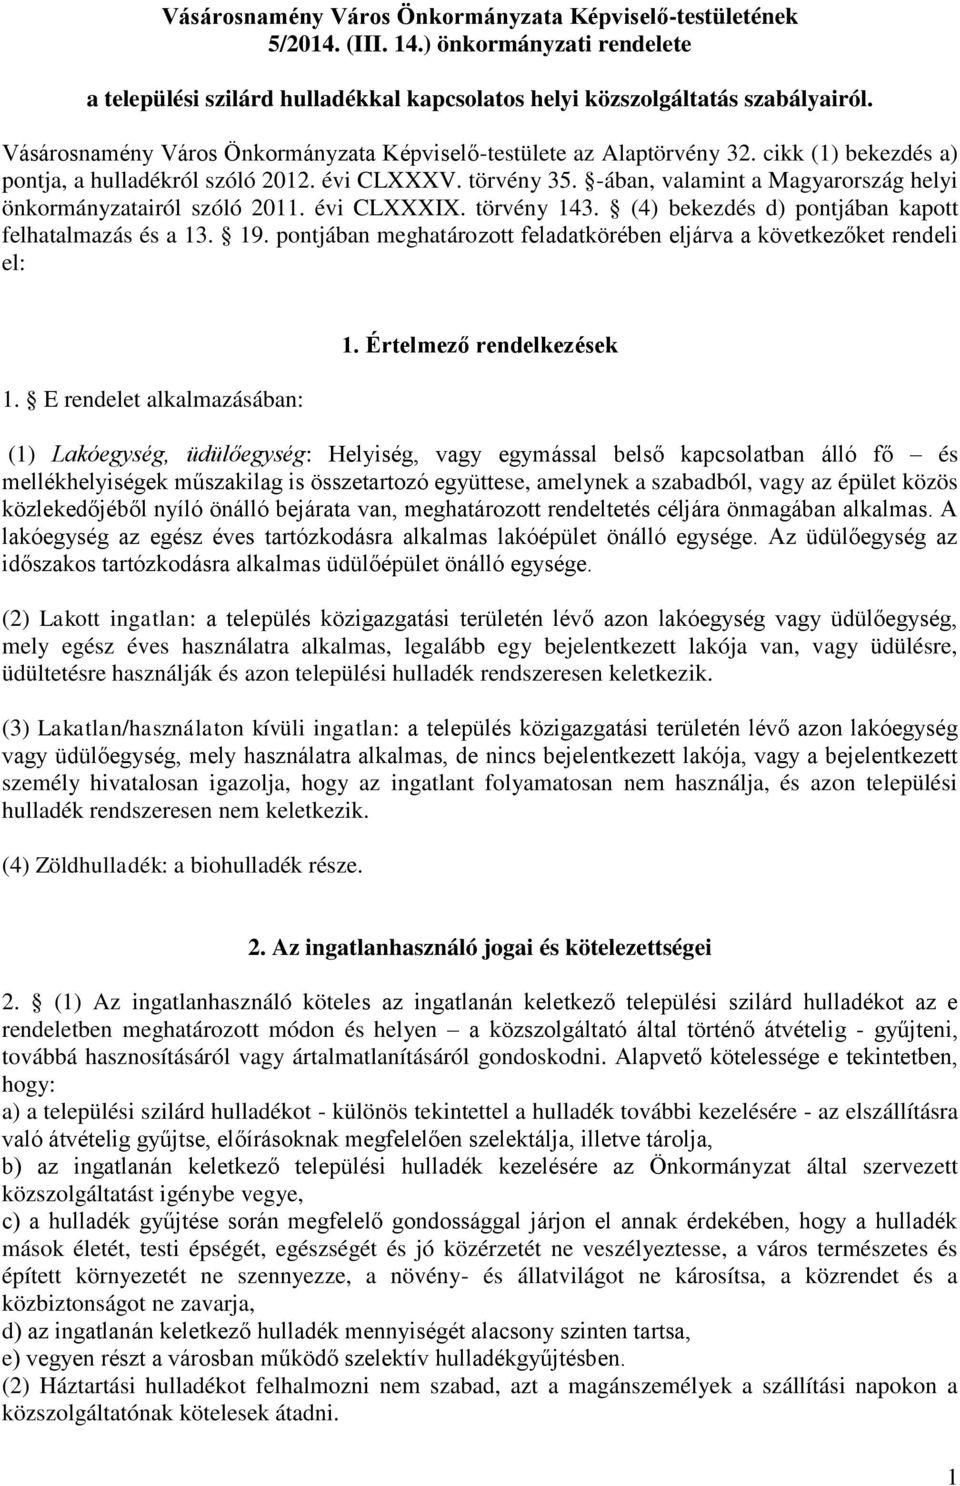 -ában, valamint a Magyarország helyi önkormányzatairól szóló 2011. évi CLXXXIX. törvény 143. (4) bekezdés d) pontjában kapott felhatalmazás és a 13. 19.